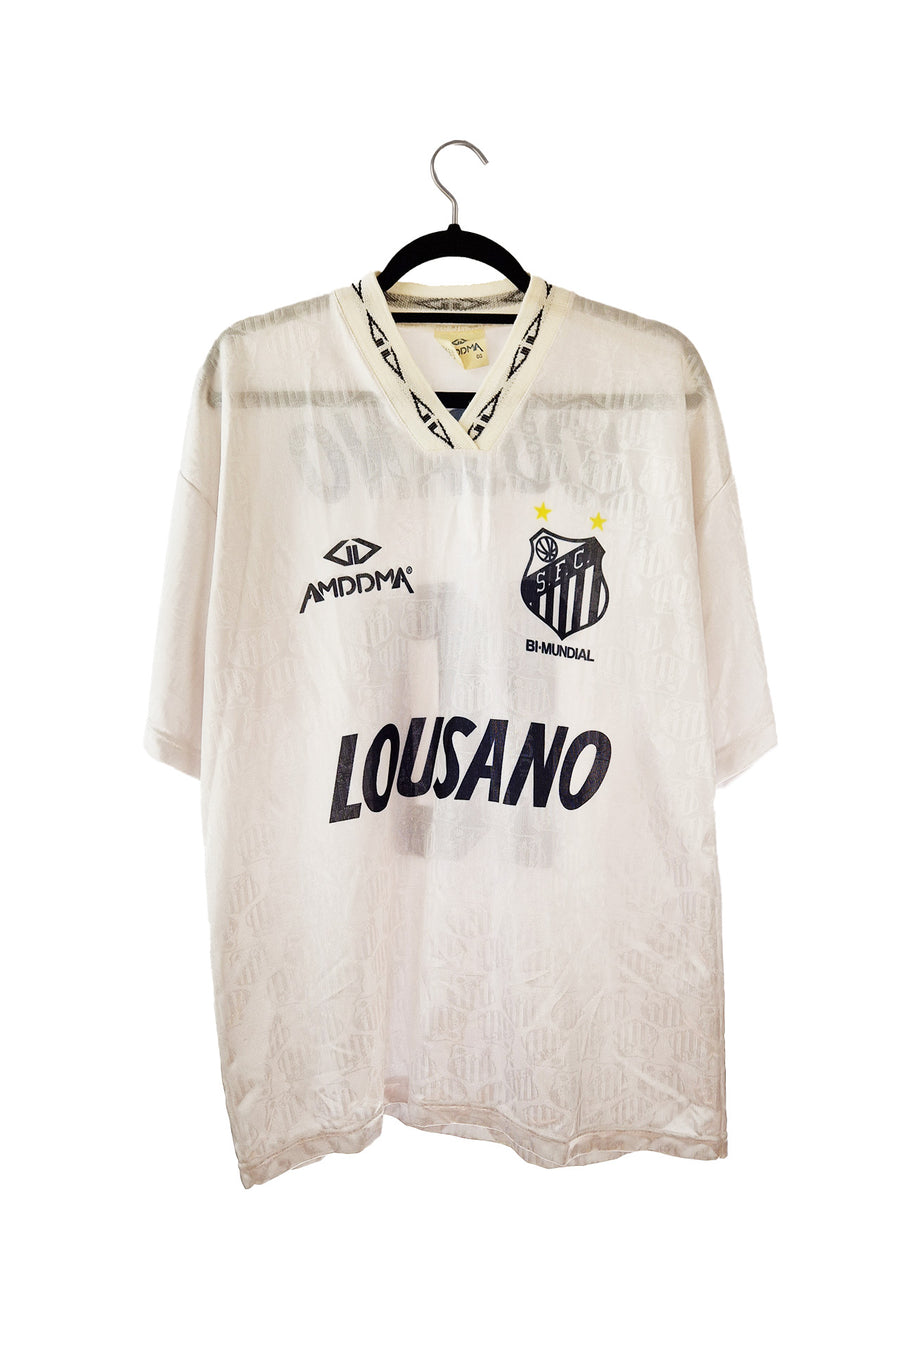 Santos 1995 Home Football Shirt #10